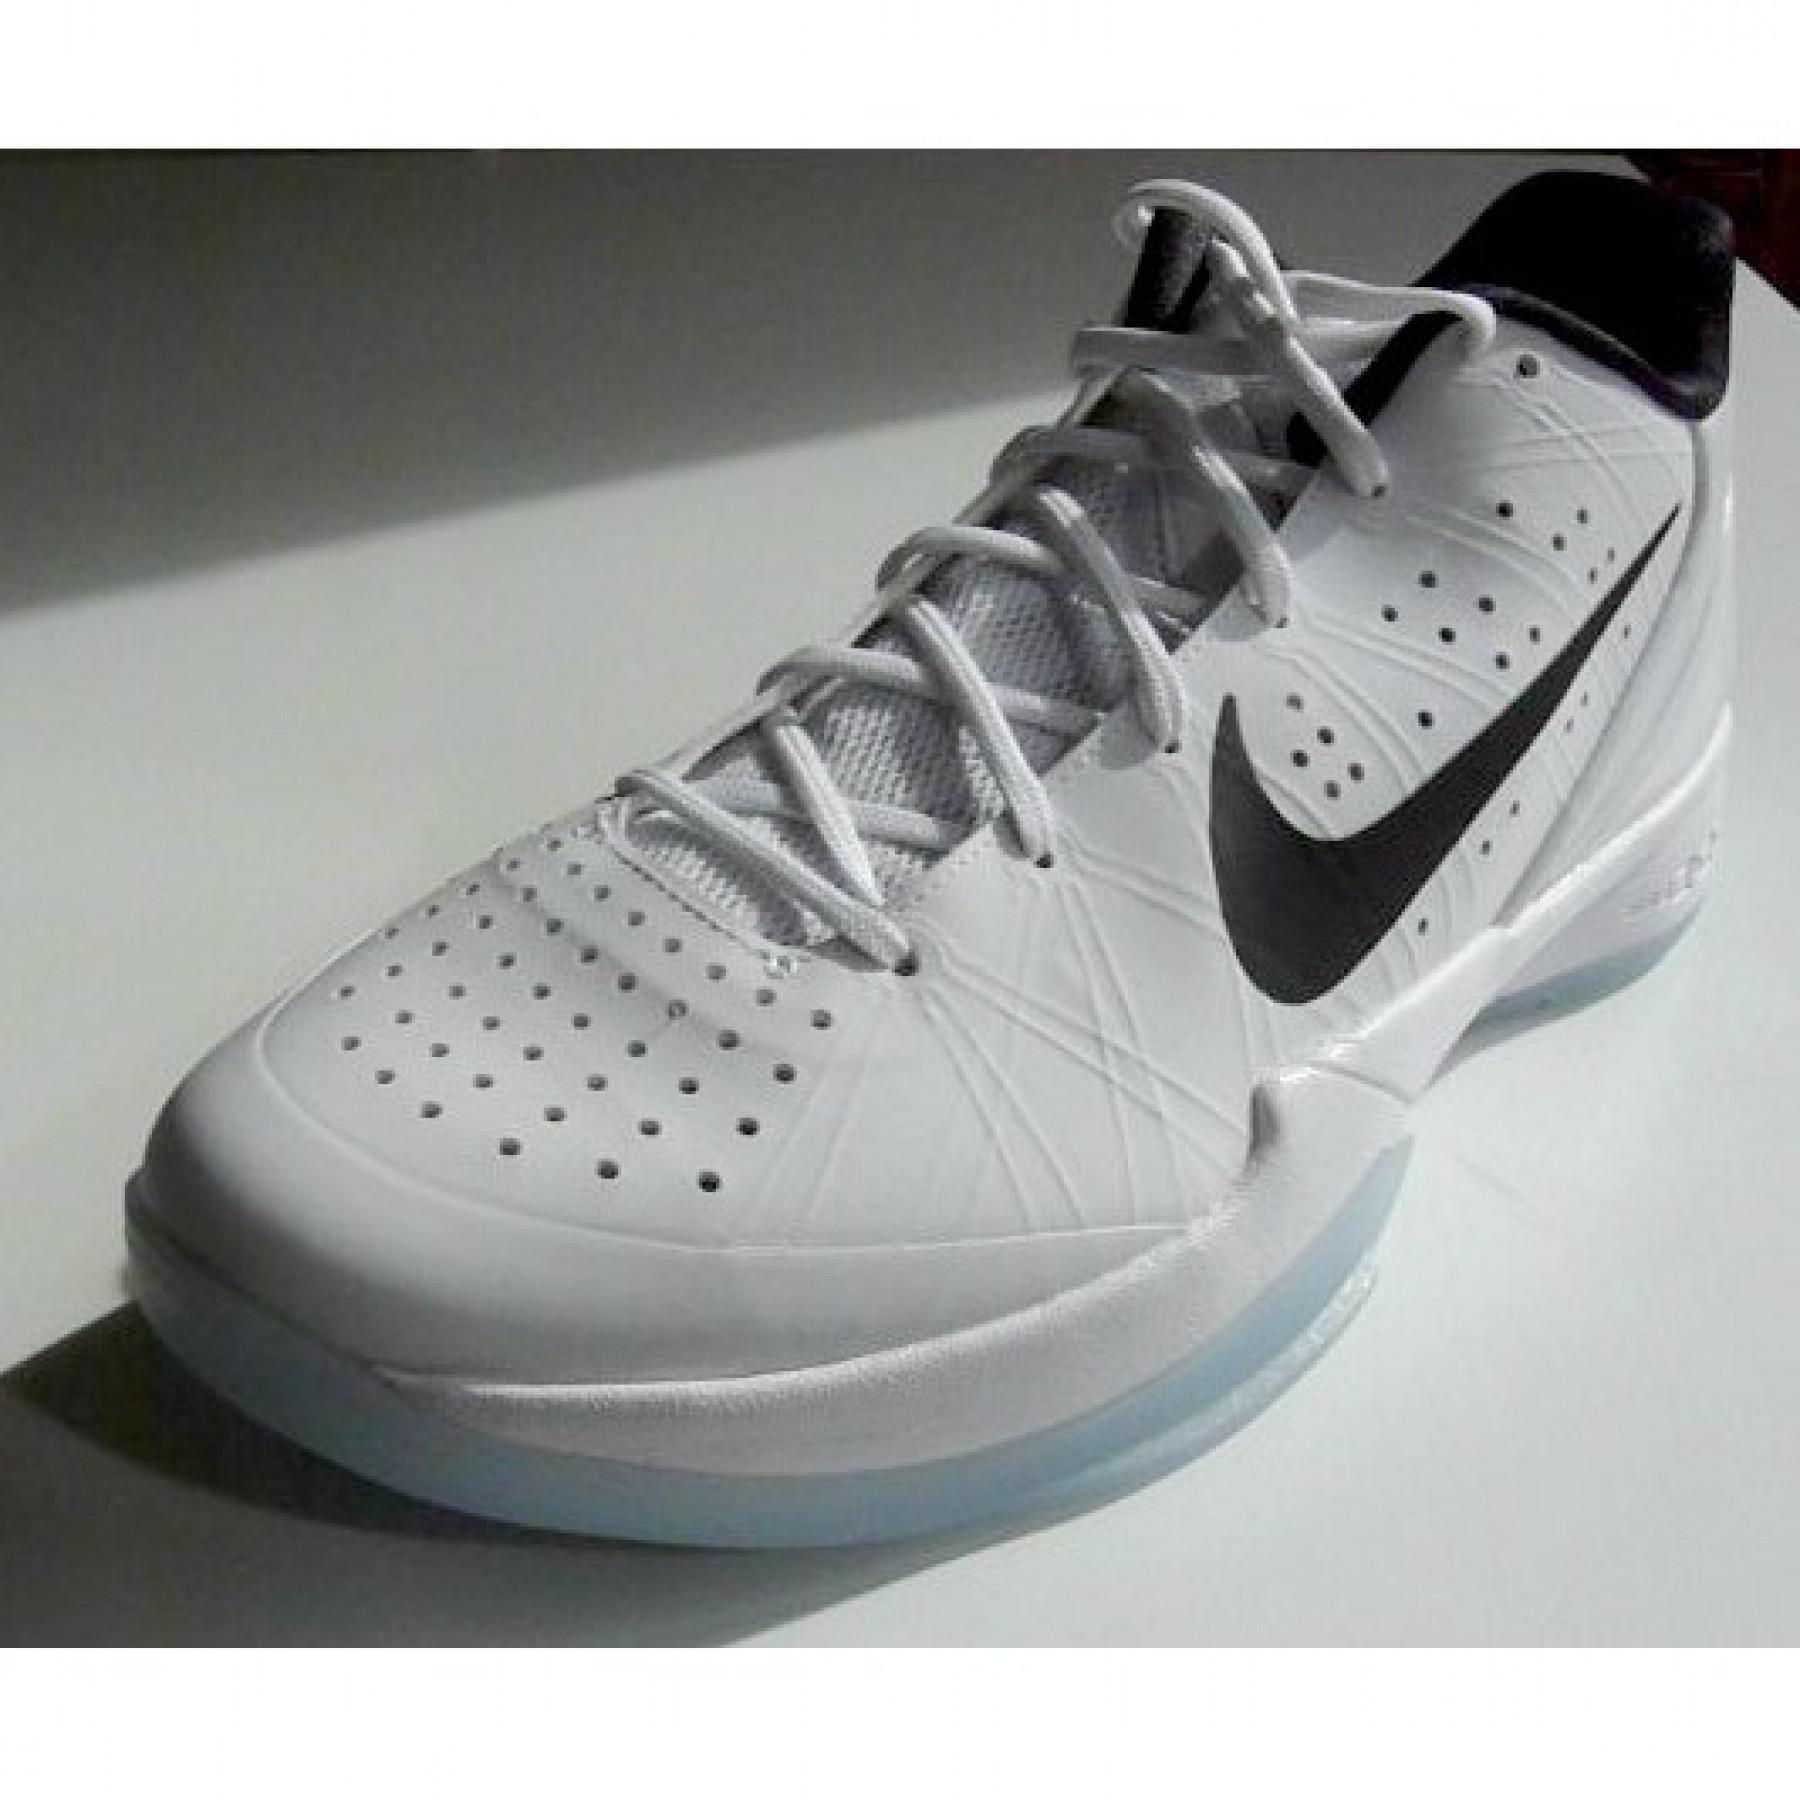 Calor Juramento luces Zapatos Nike Air Zoom HyperAttack blanc